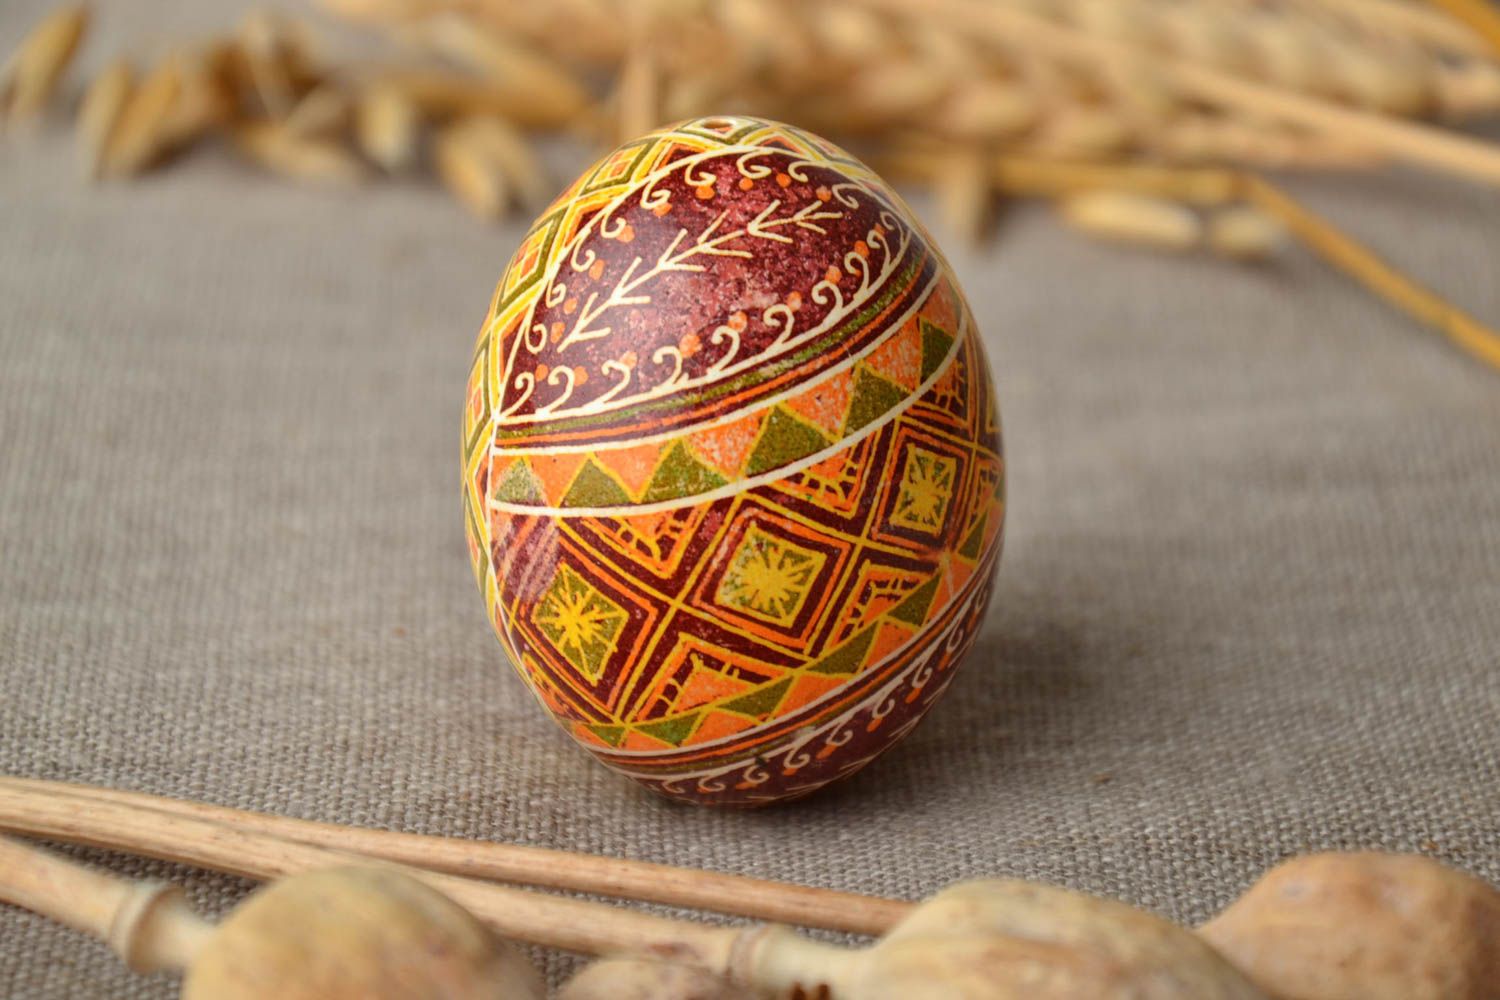 Huevo de Pascua con ornamentos étnicos foto 1